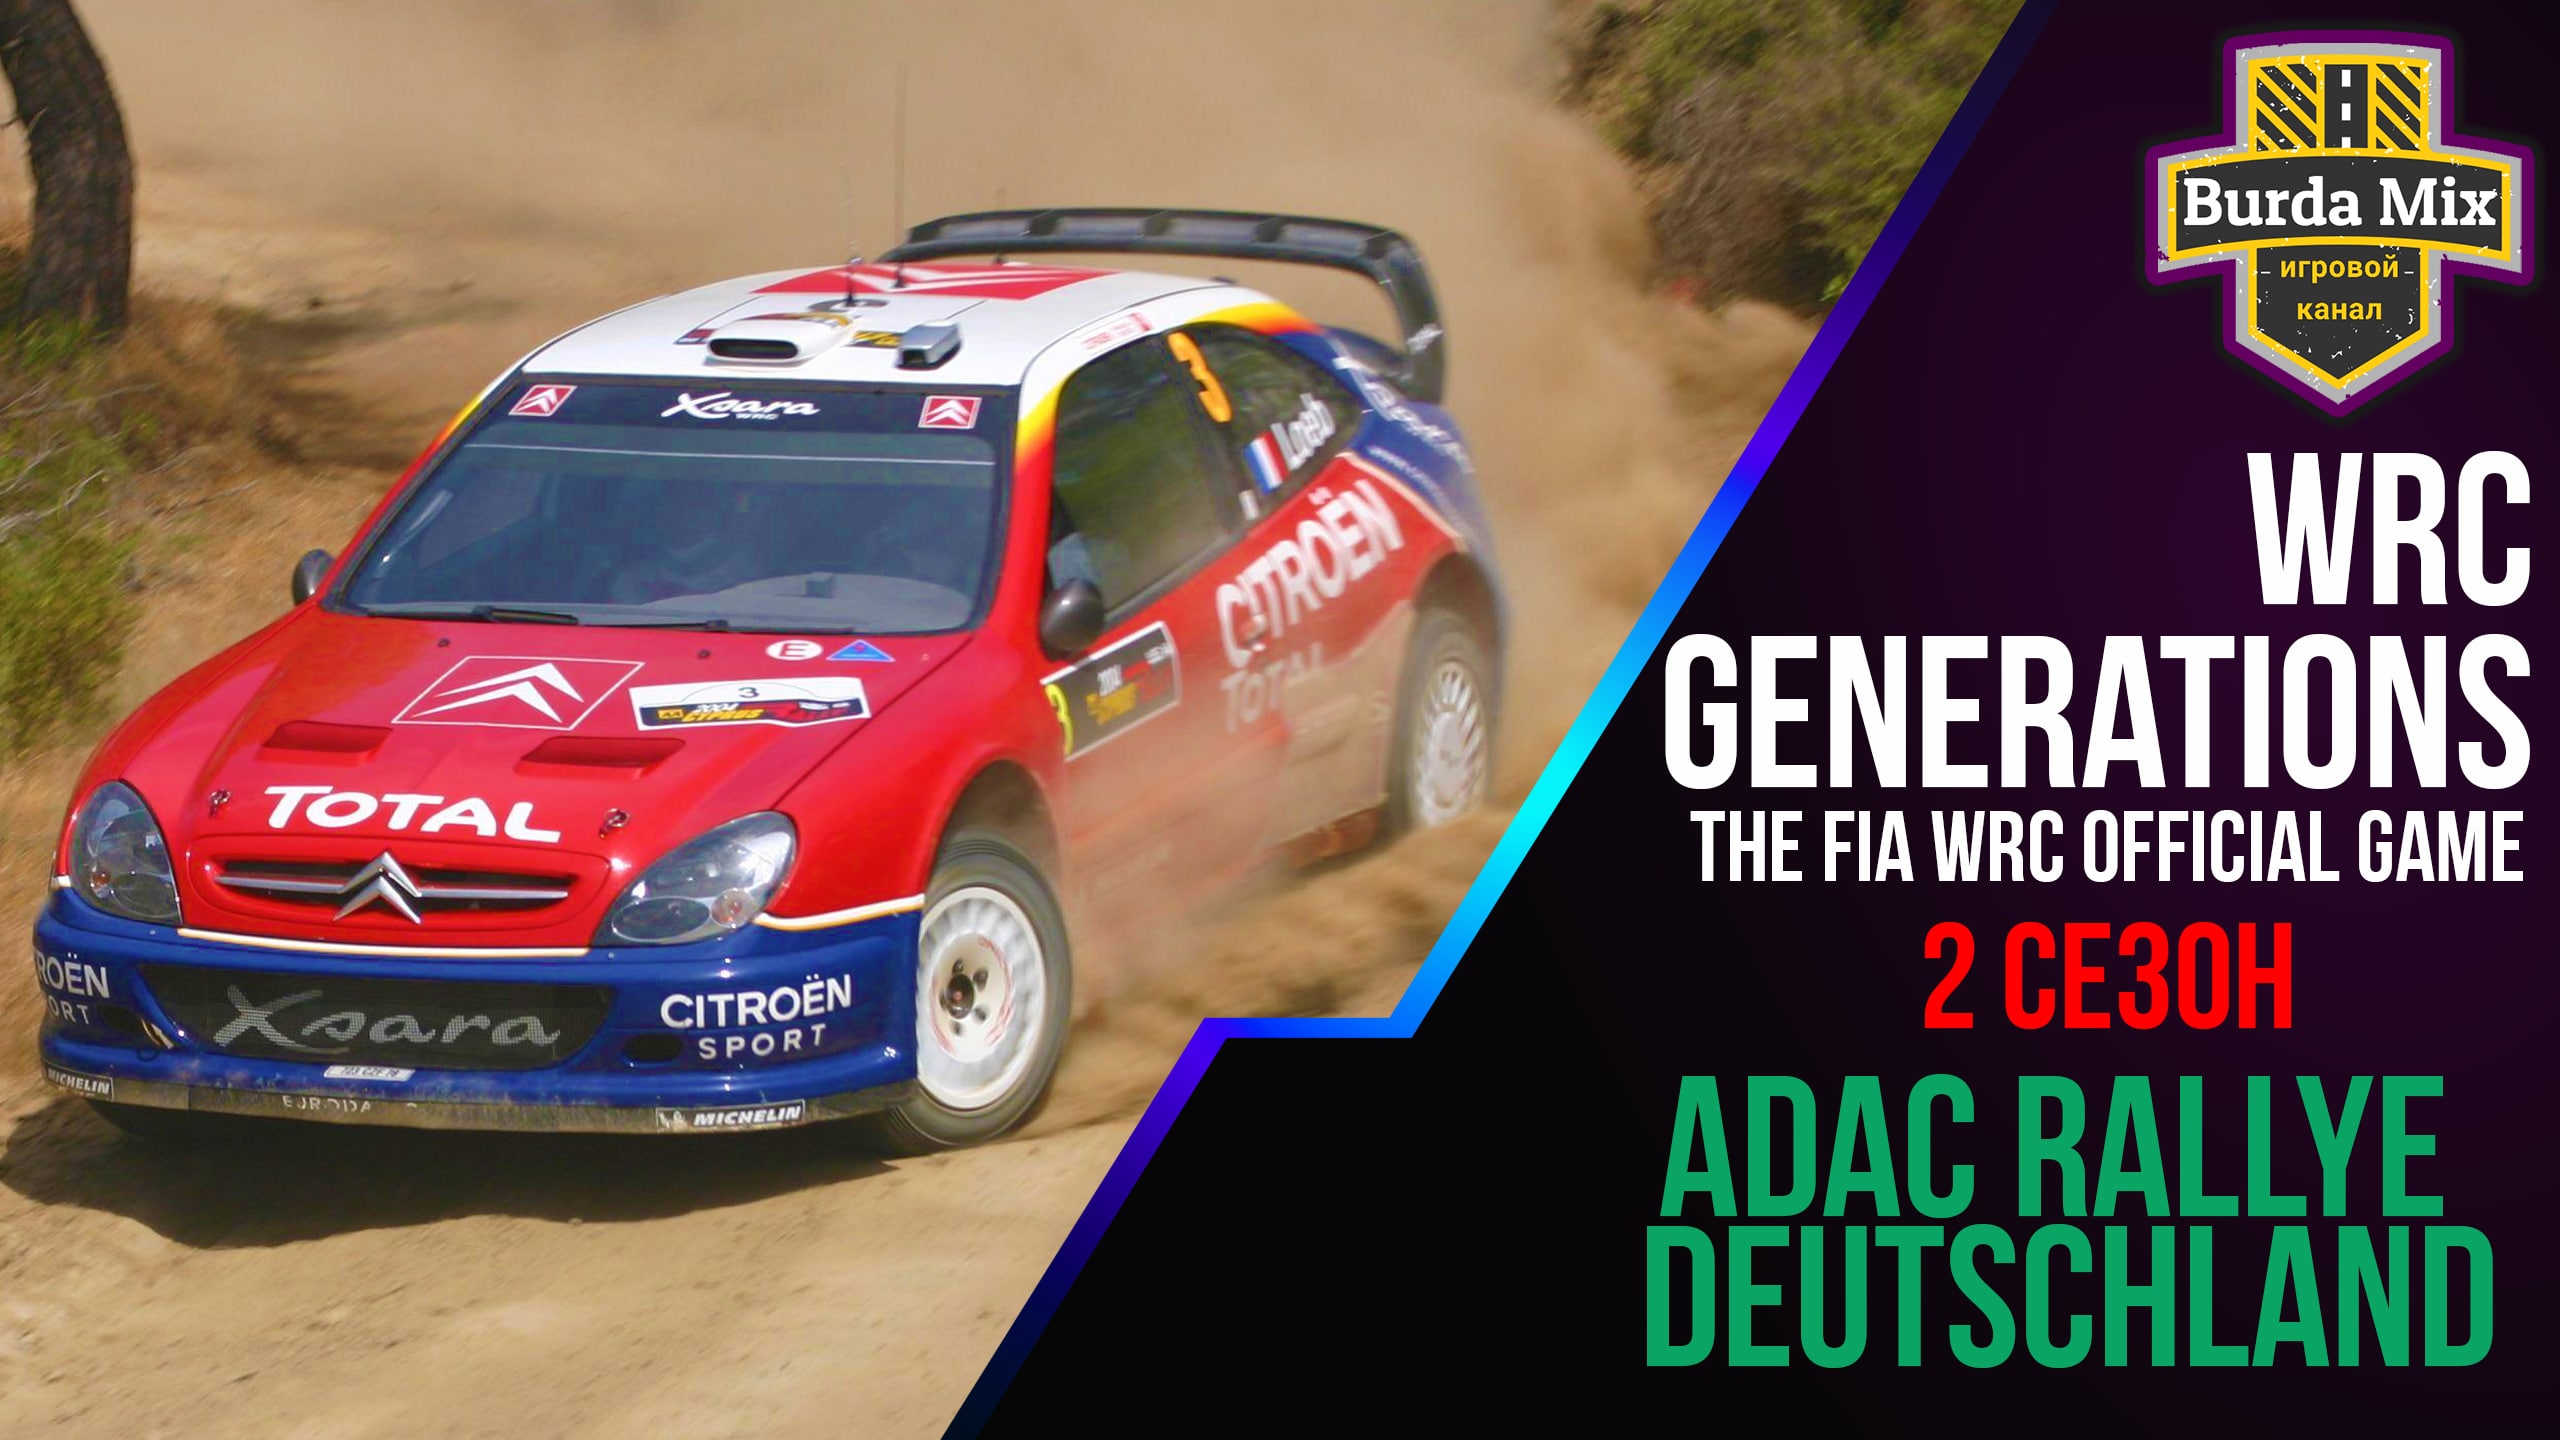 ADAC ралли германии | WRC Generations – The FIA WRC Official Game #14